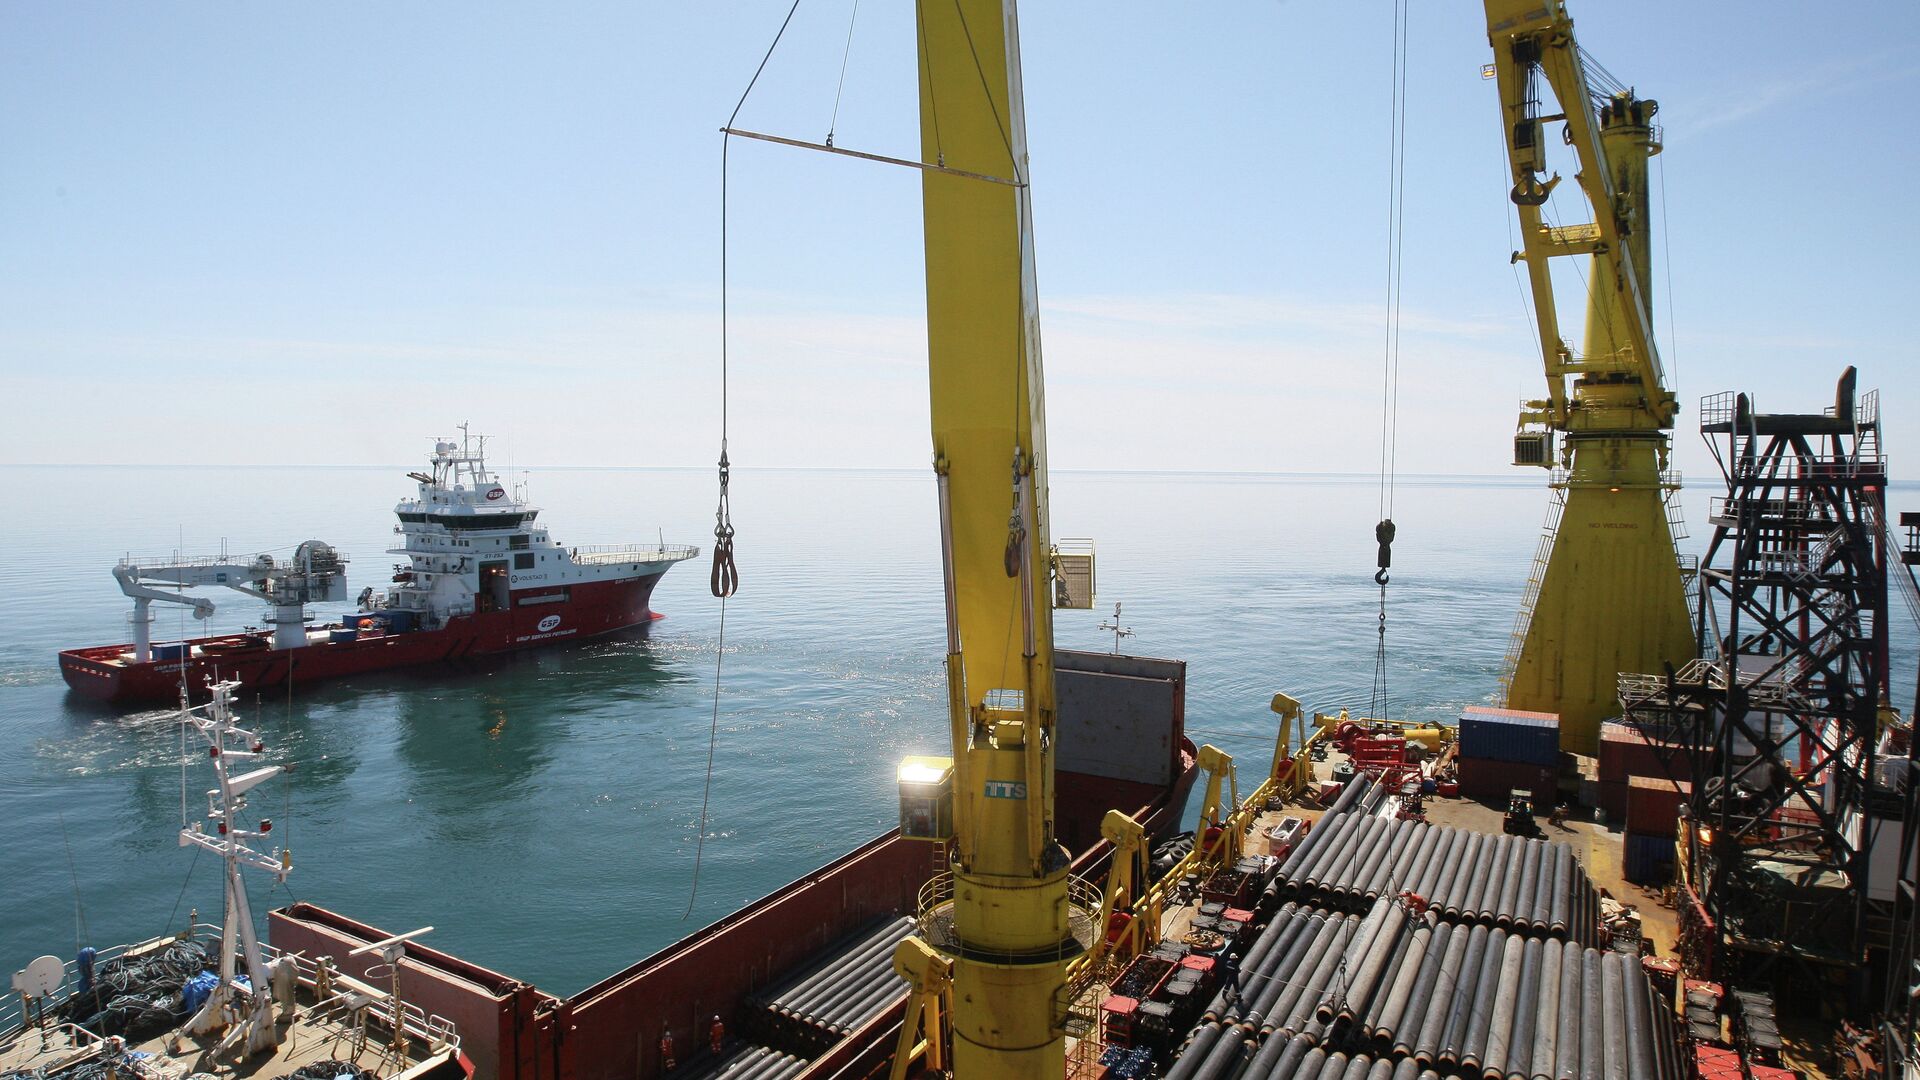 Турция обнаружила новые месторождения газа в Черном море